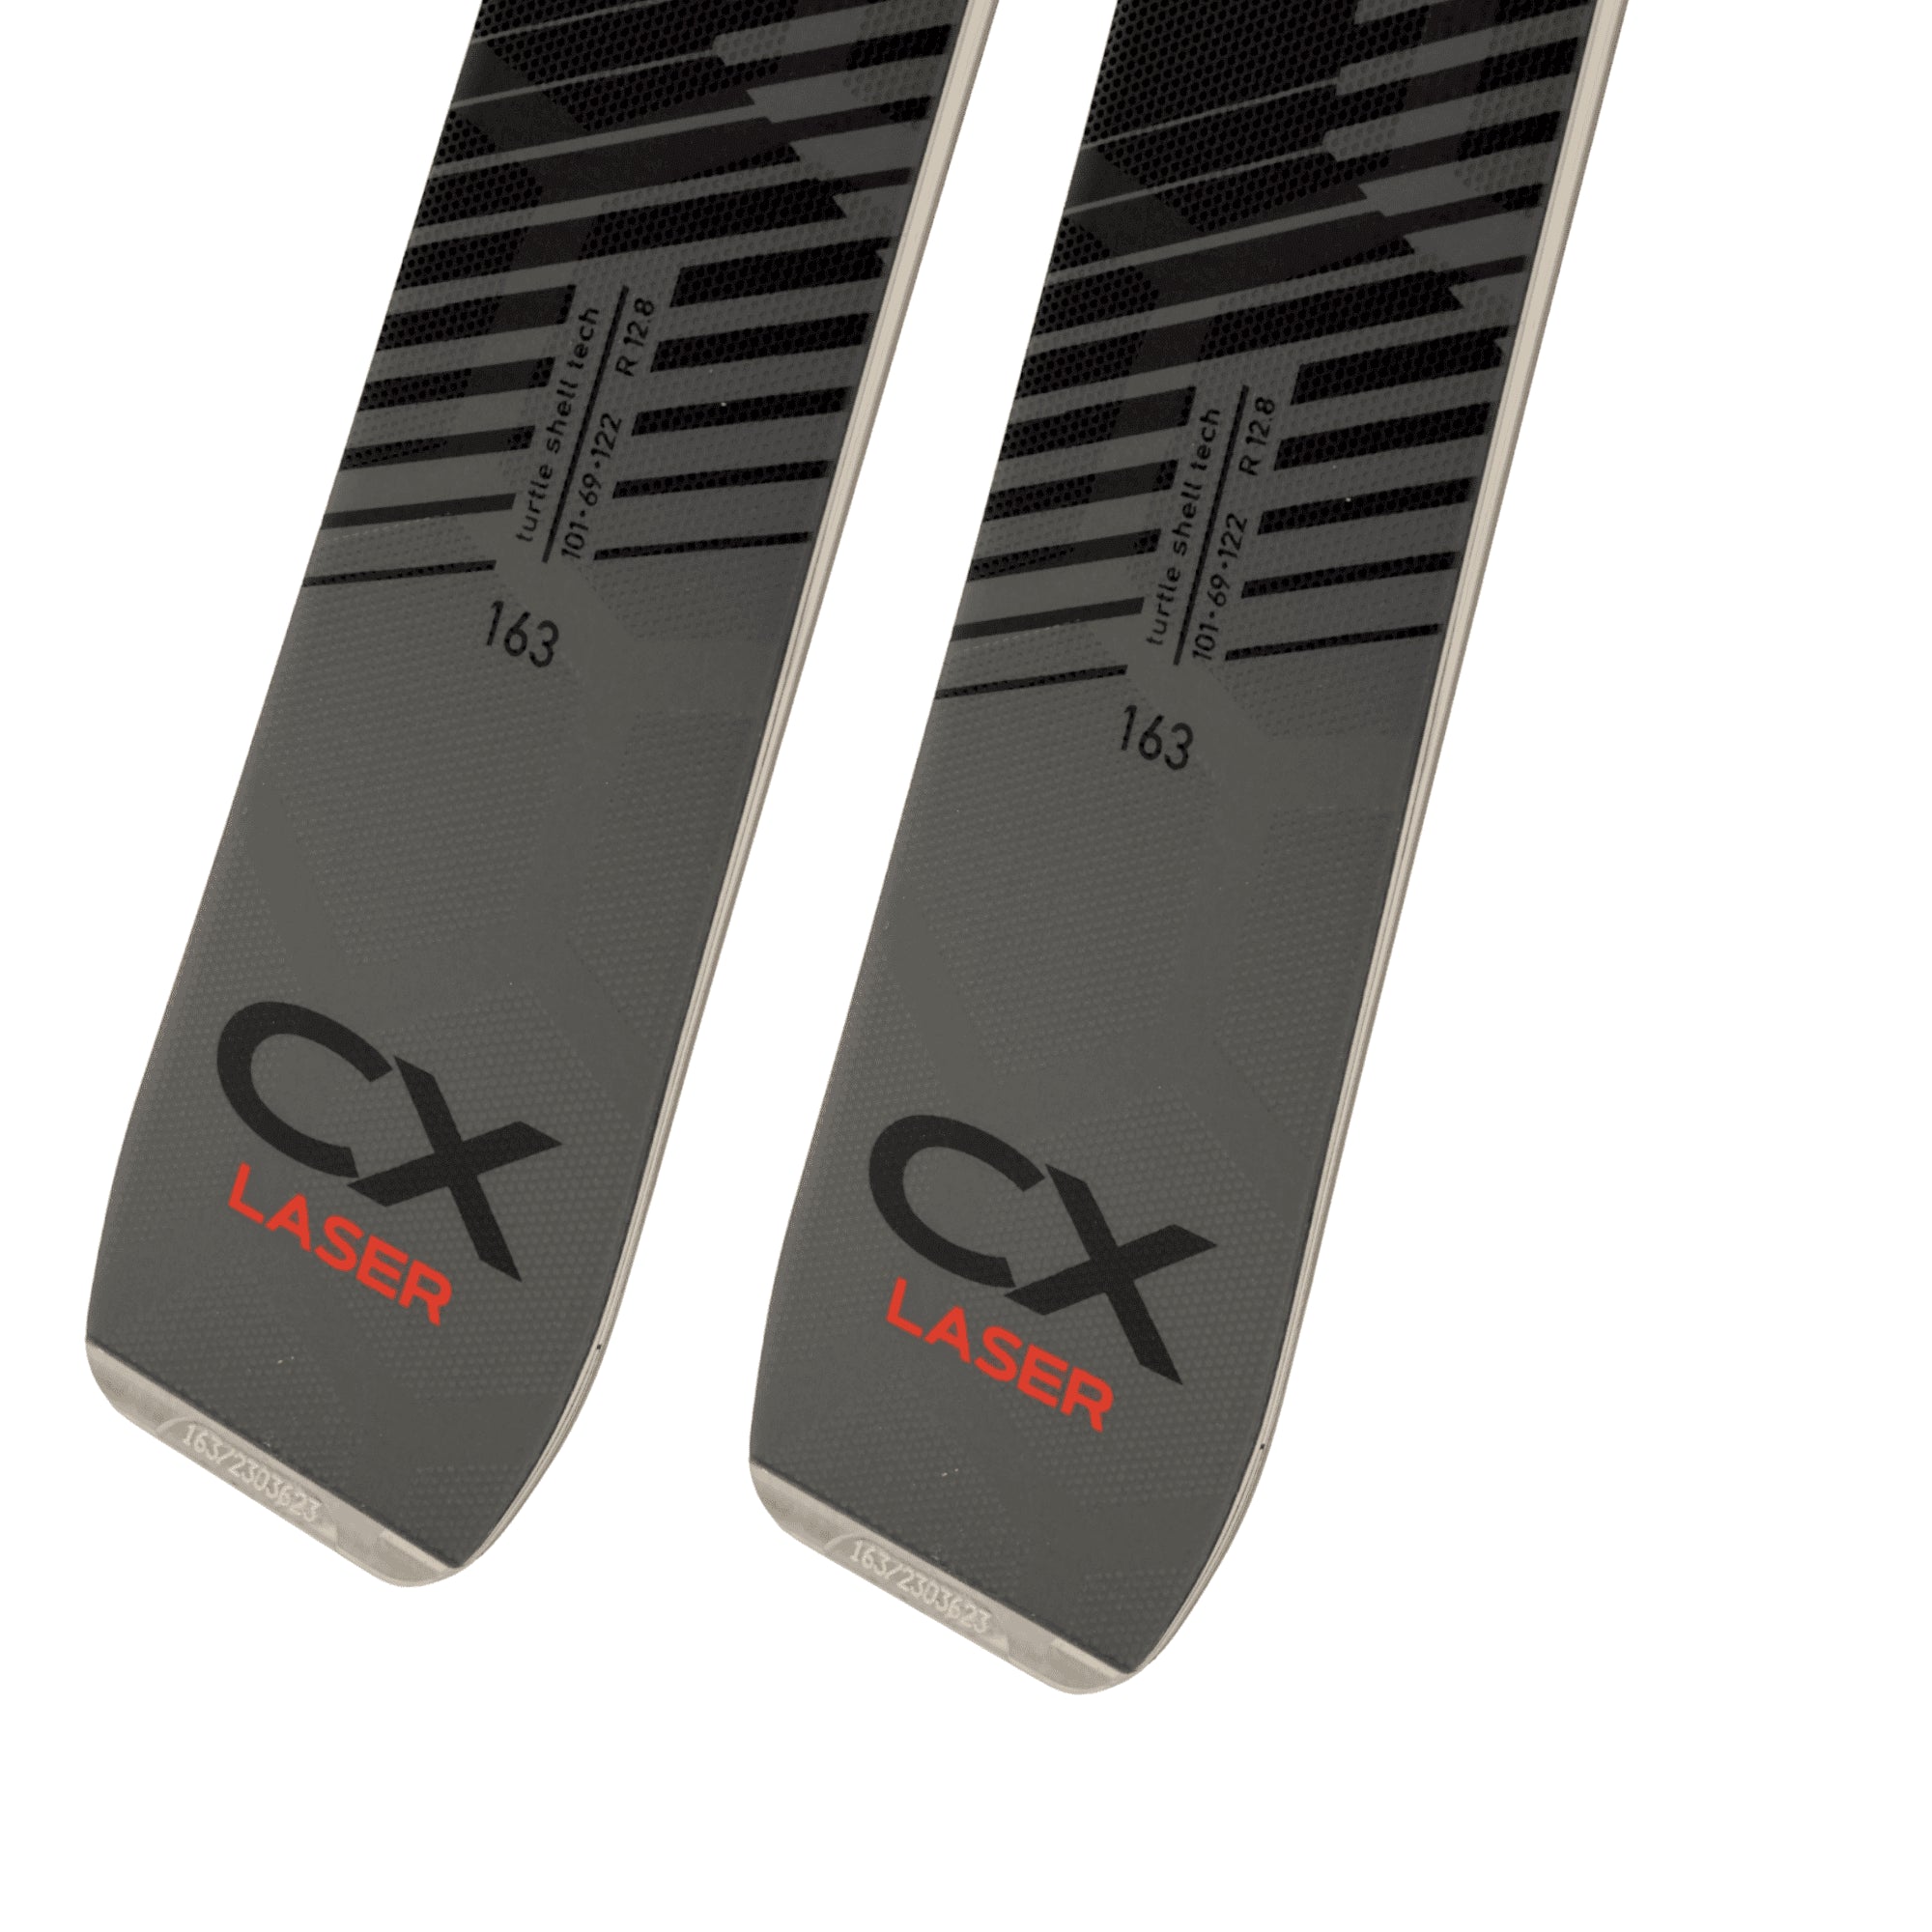 Stockli Laser CX MC D20 + MC11 Adult Alpine Skis – Oberson